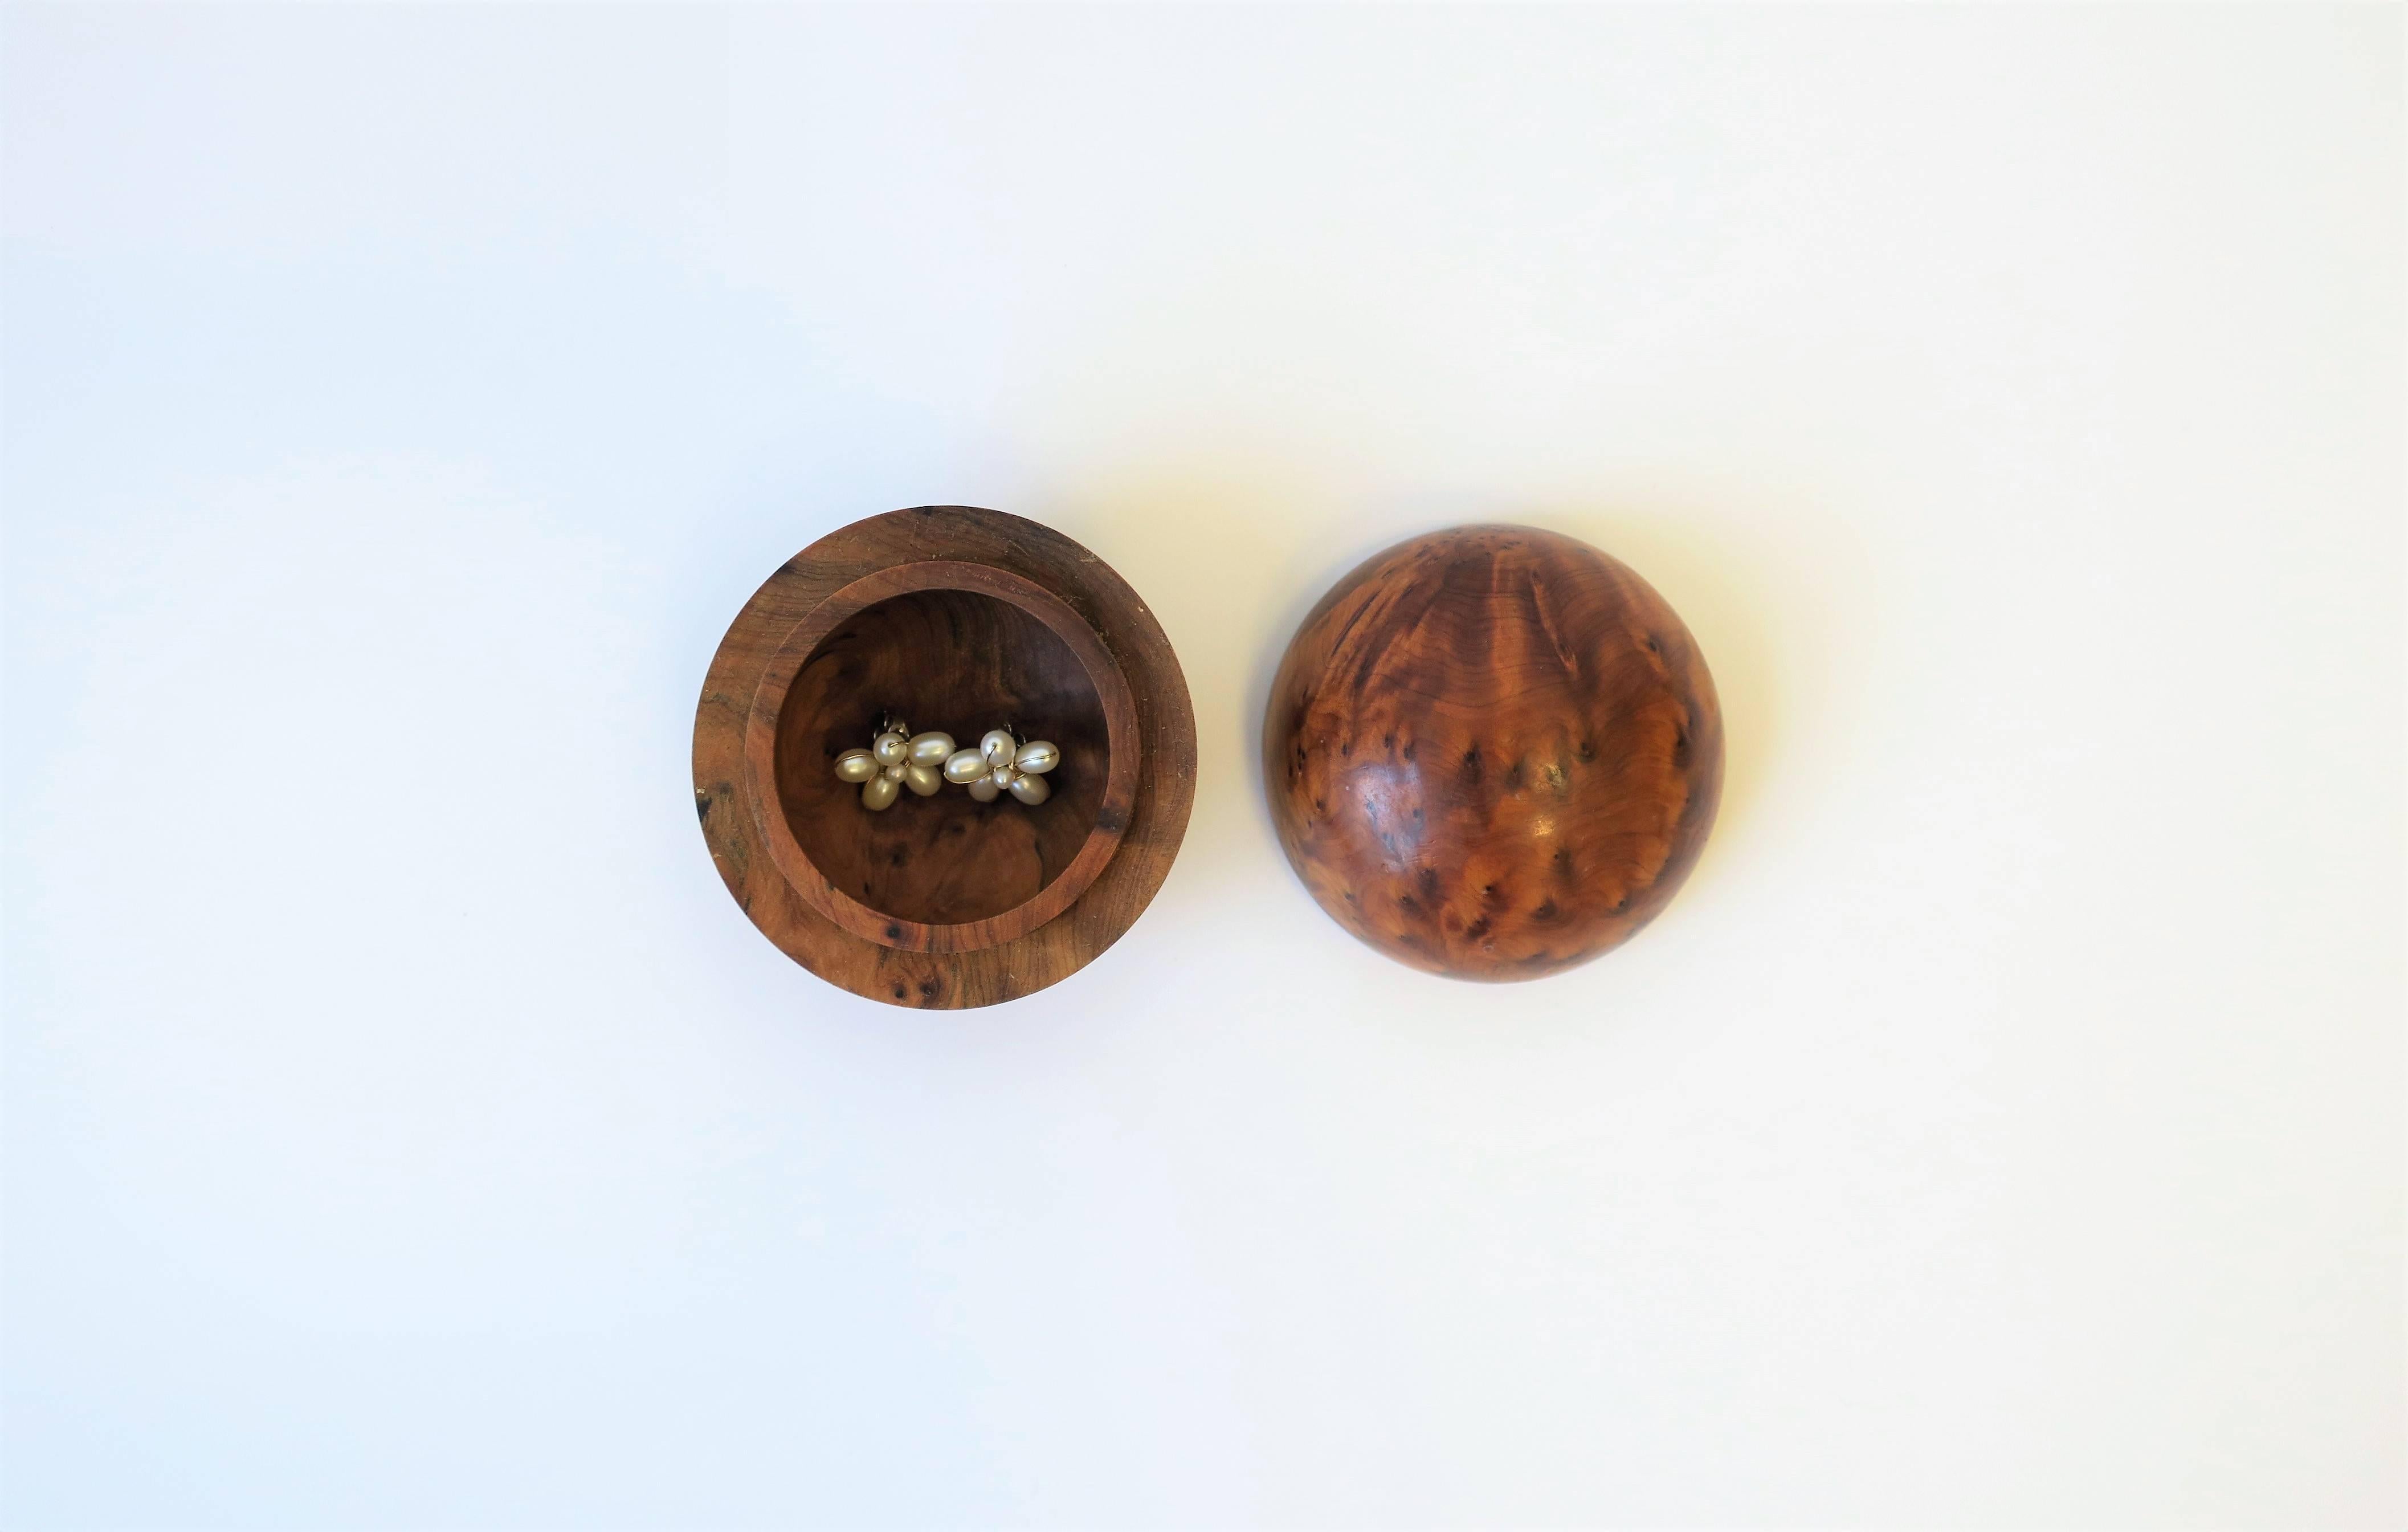 Minimalist Round Burl Wood Trinket or Jewelry Box